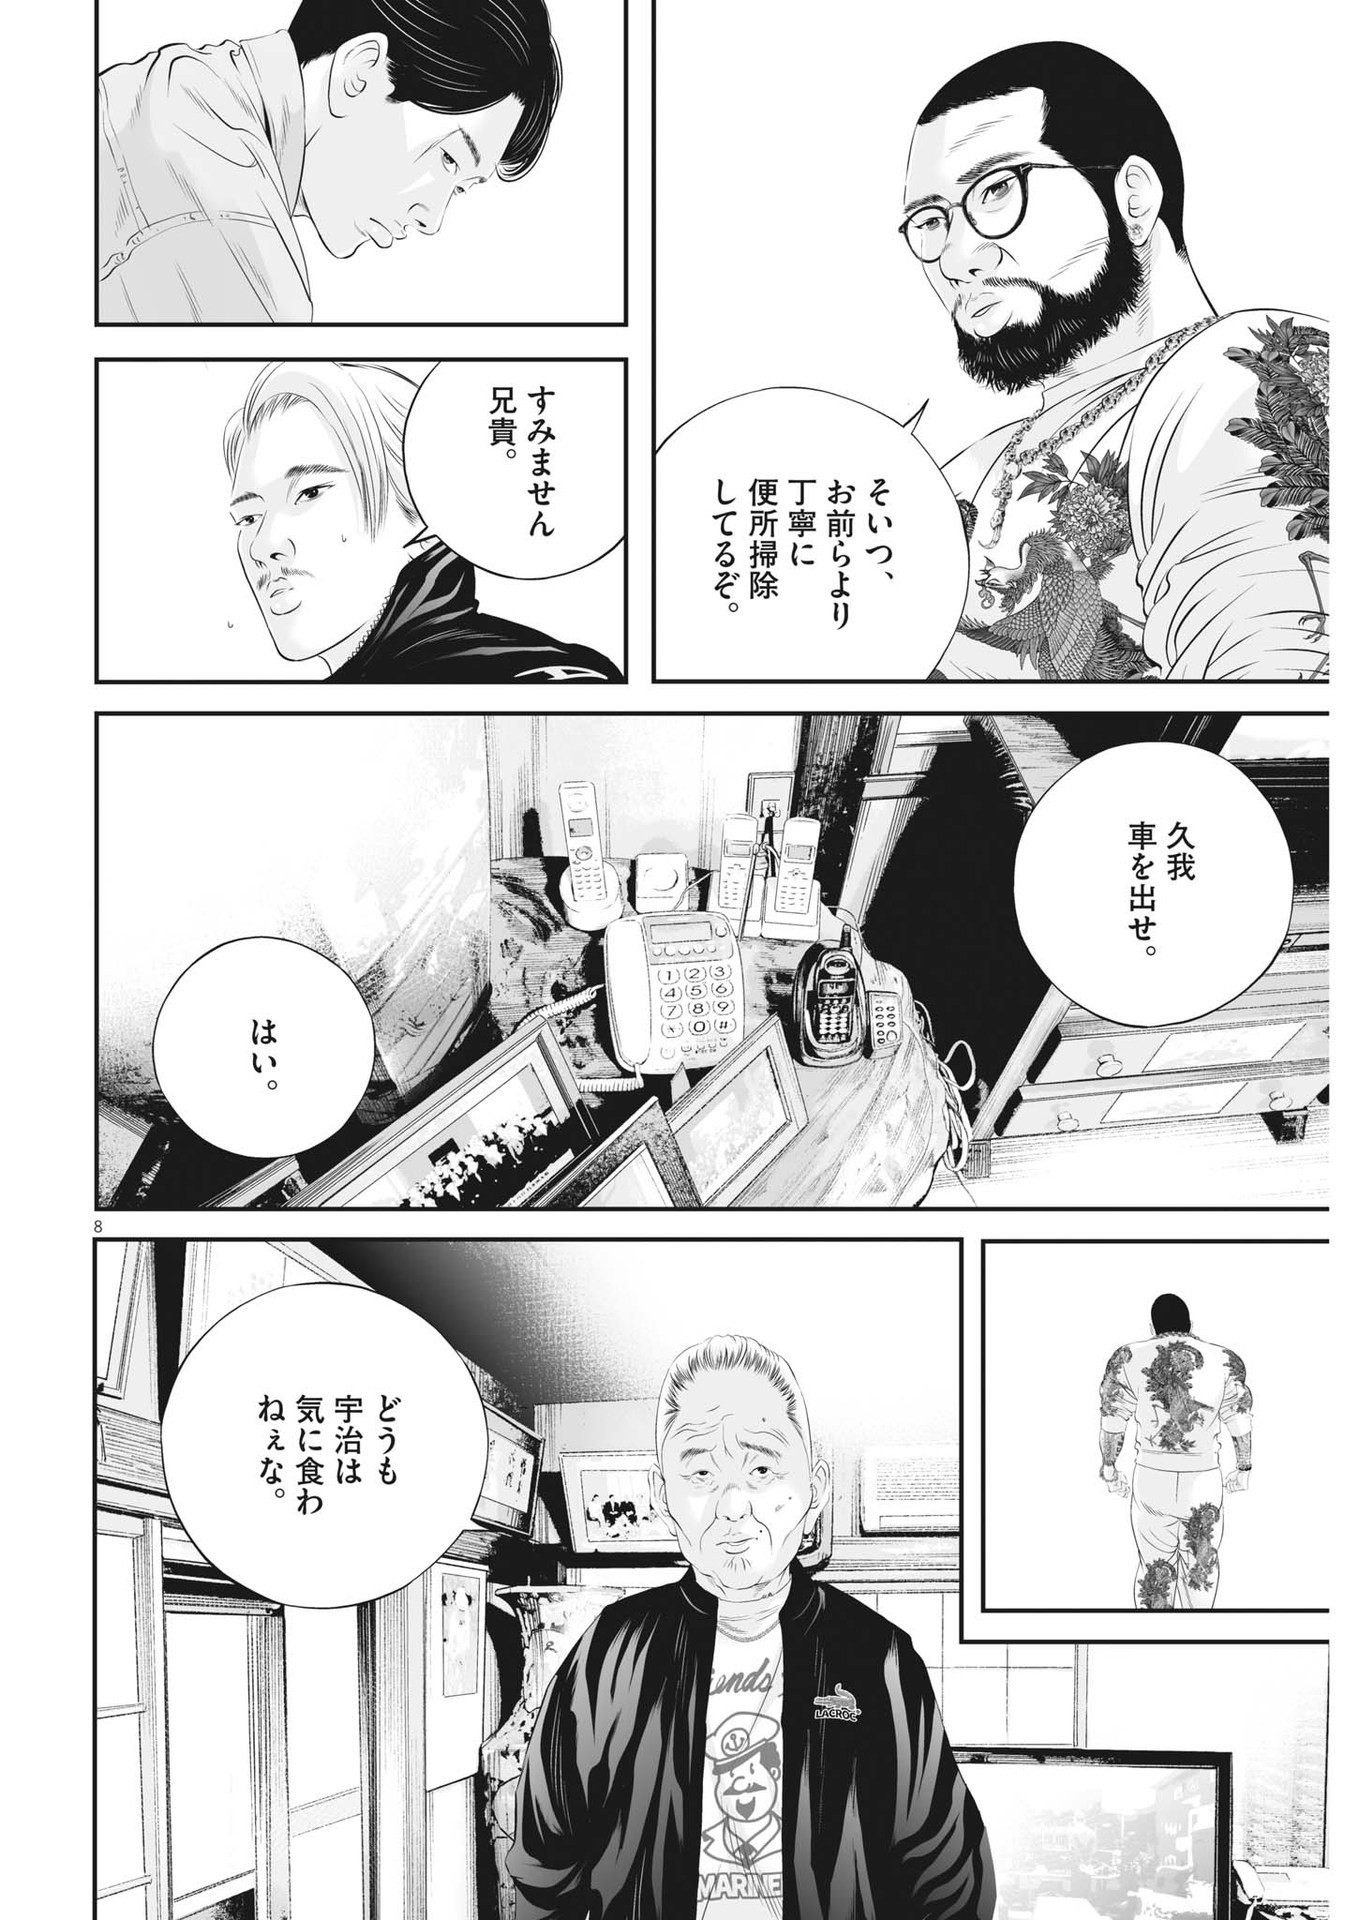 Kujou no Taizai - Chapter 95 - Page 8